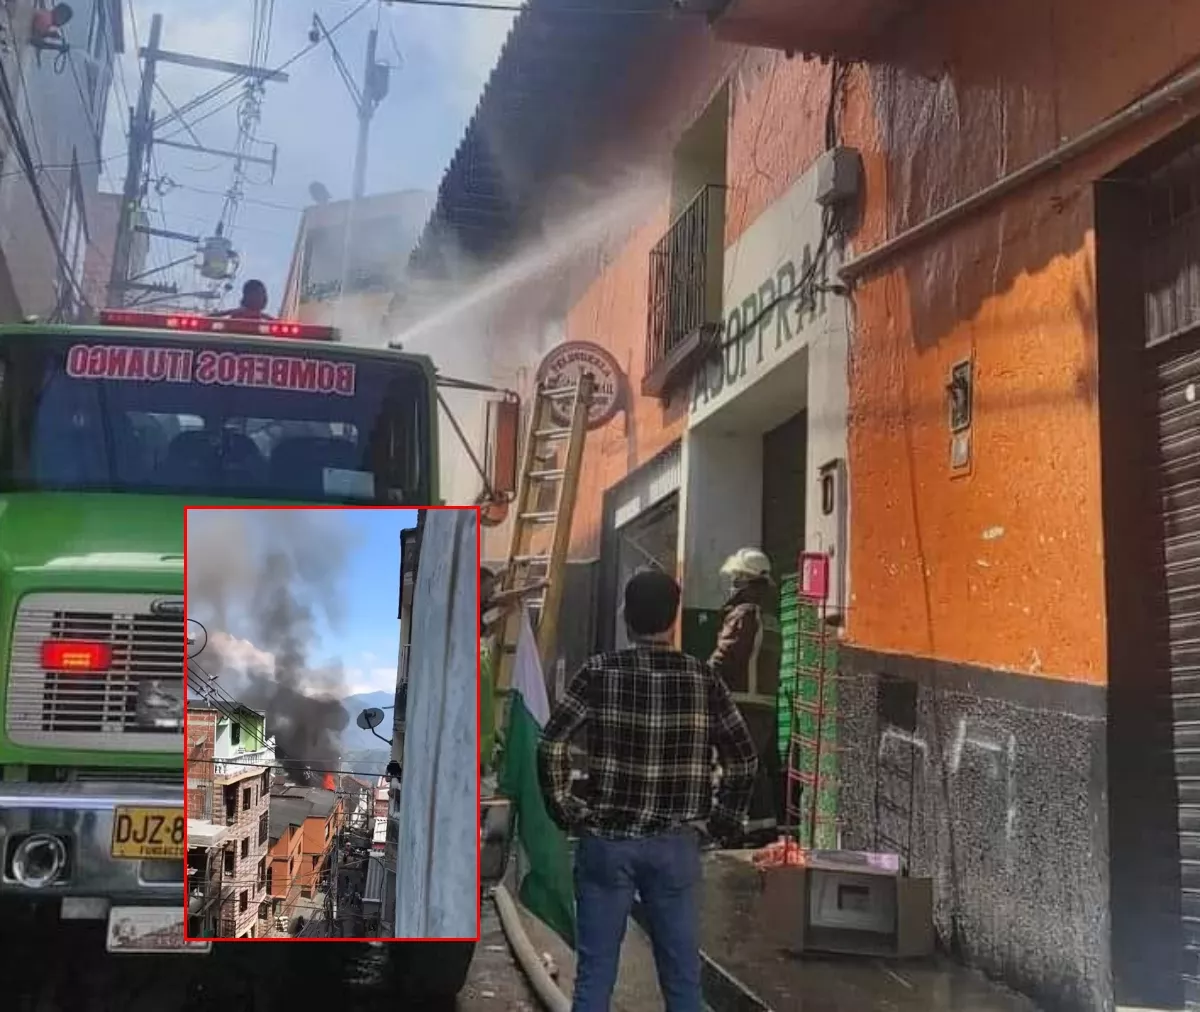 La conflagración se dio en uno de los supermercados más grandes de Ituango. No hay reporte de heridos, pero hay más de 8 locales afectados.